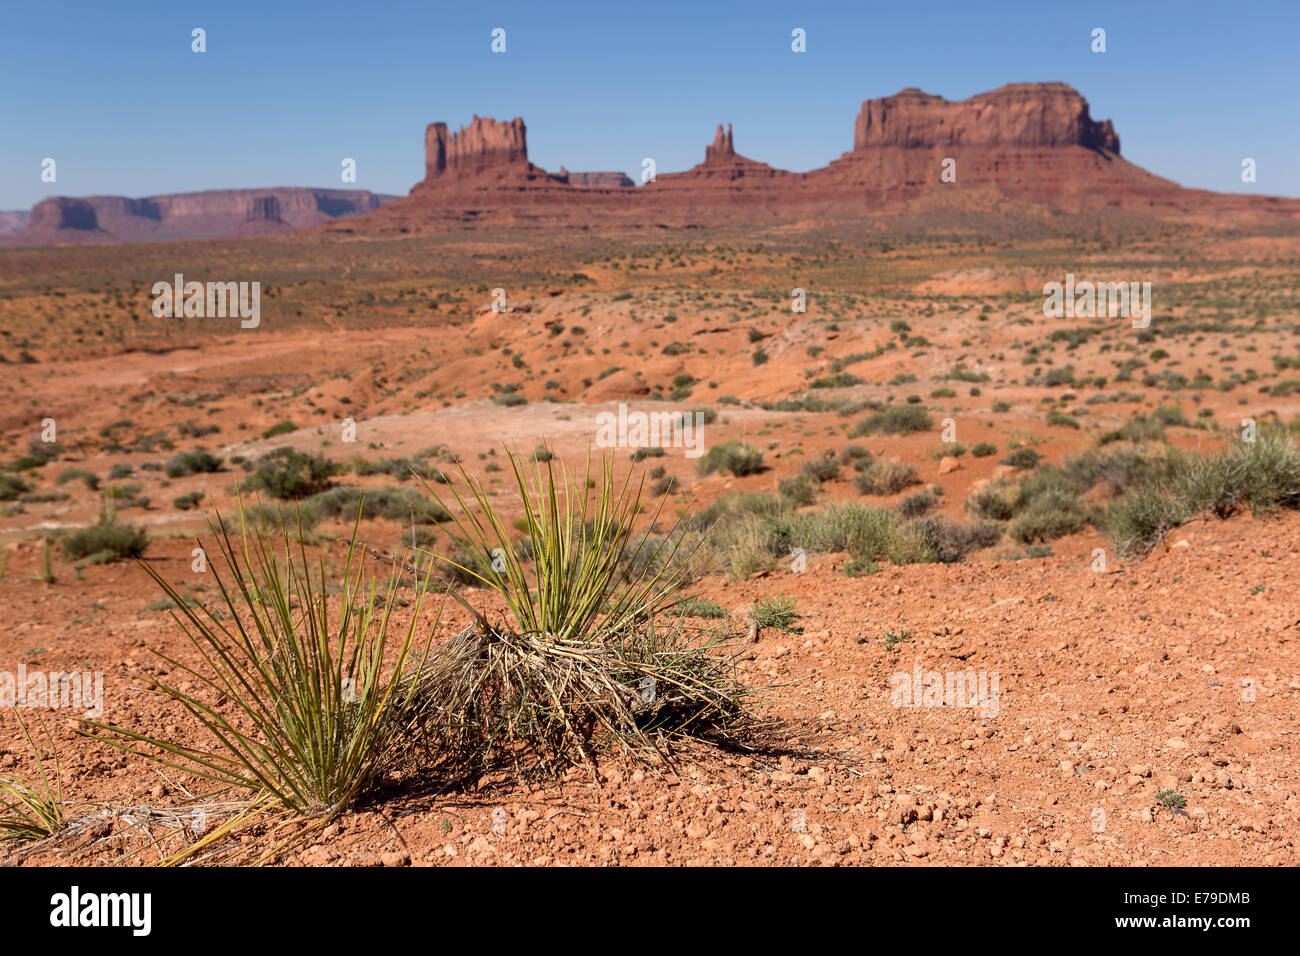 Yucca-Pflanzen in der Wüste mit dem Monument Valley tribal Park im Hintergrund Stockfoto